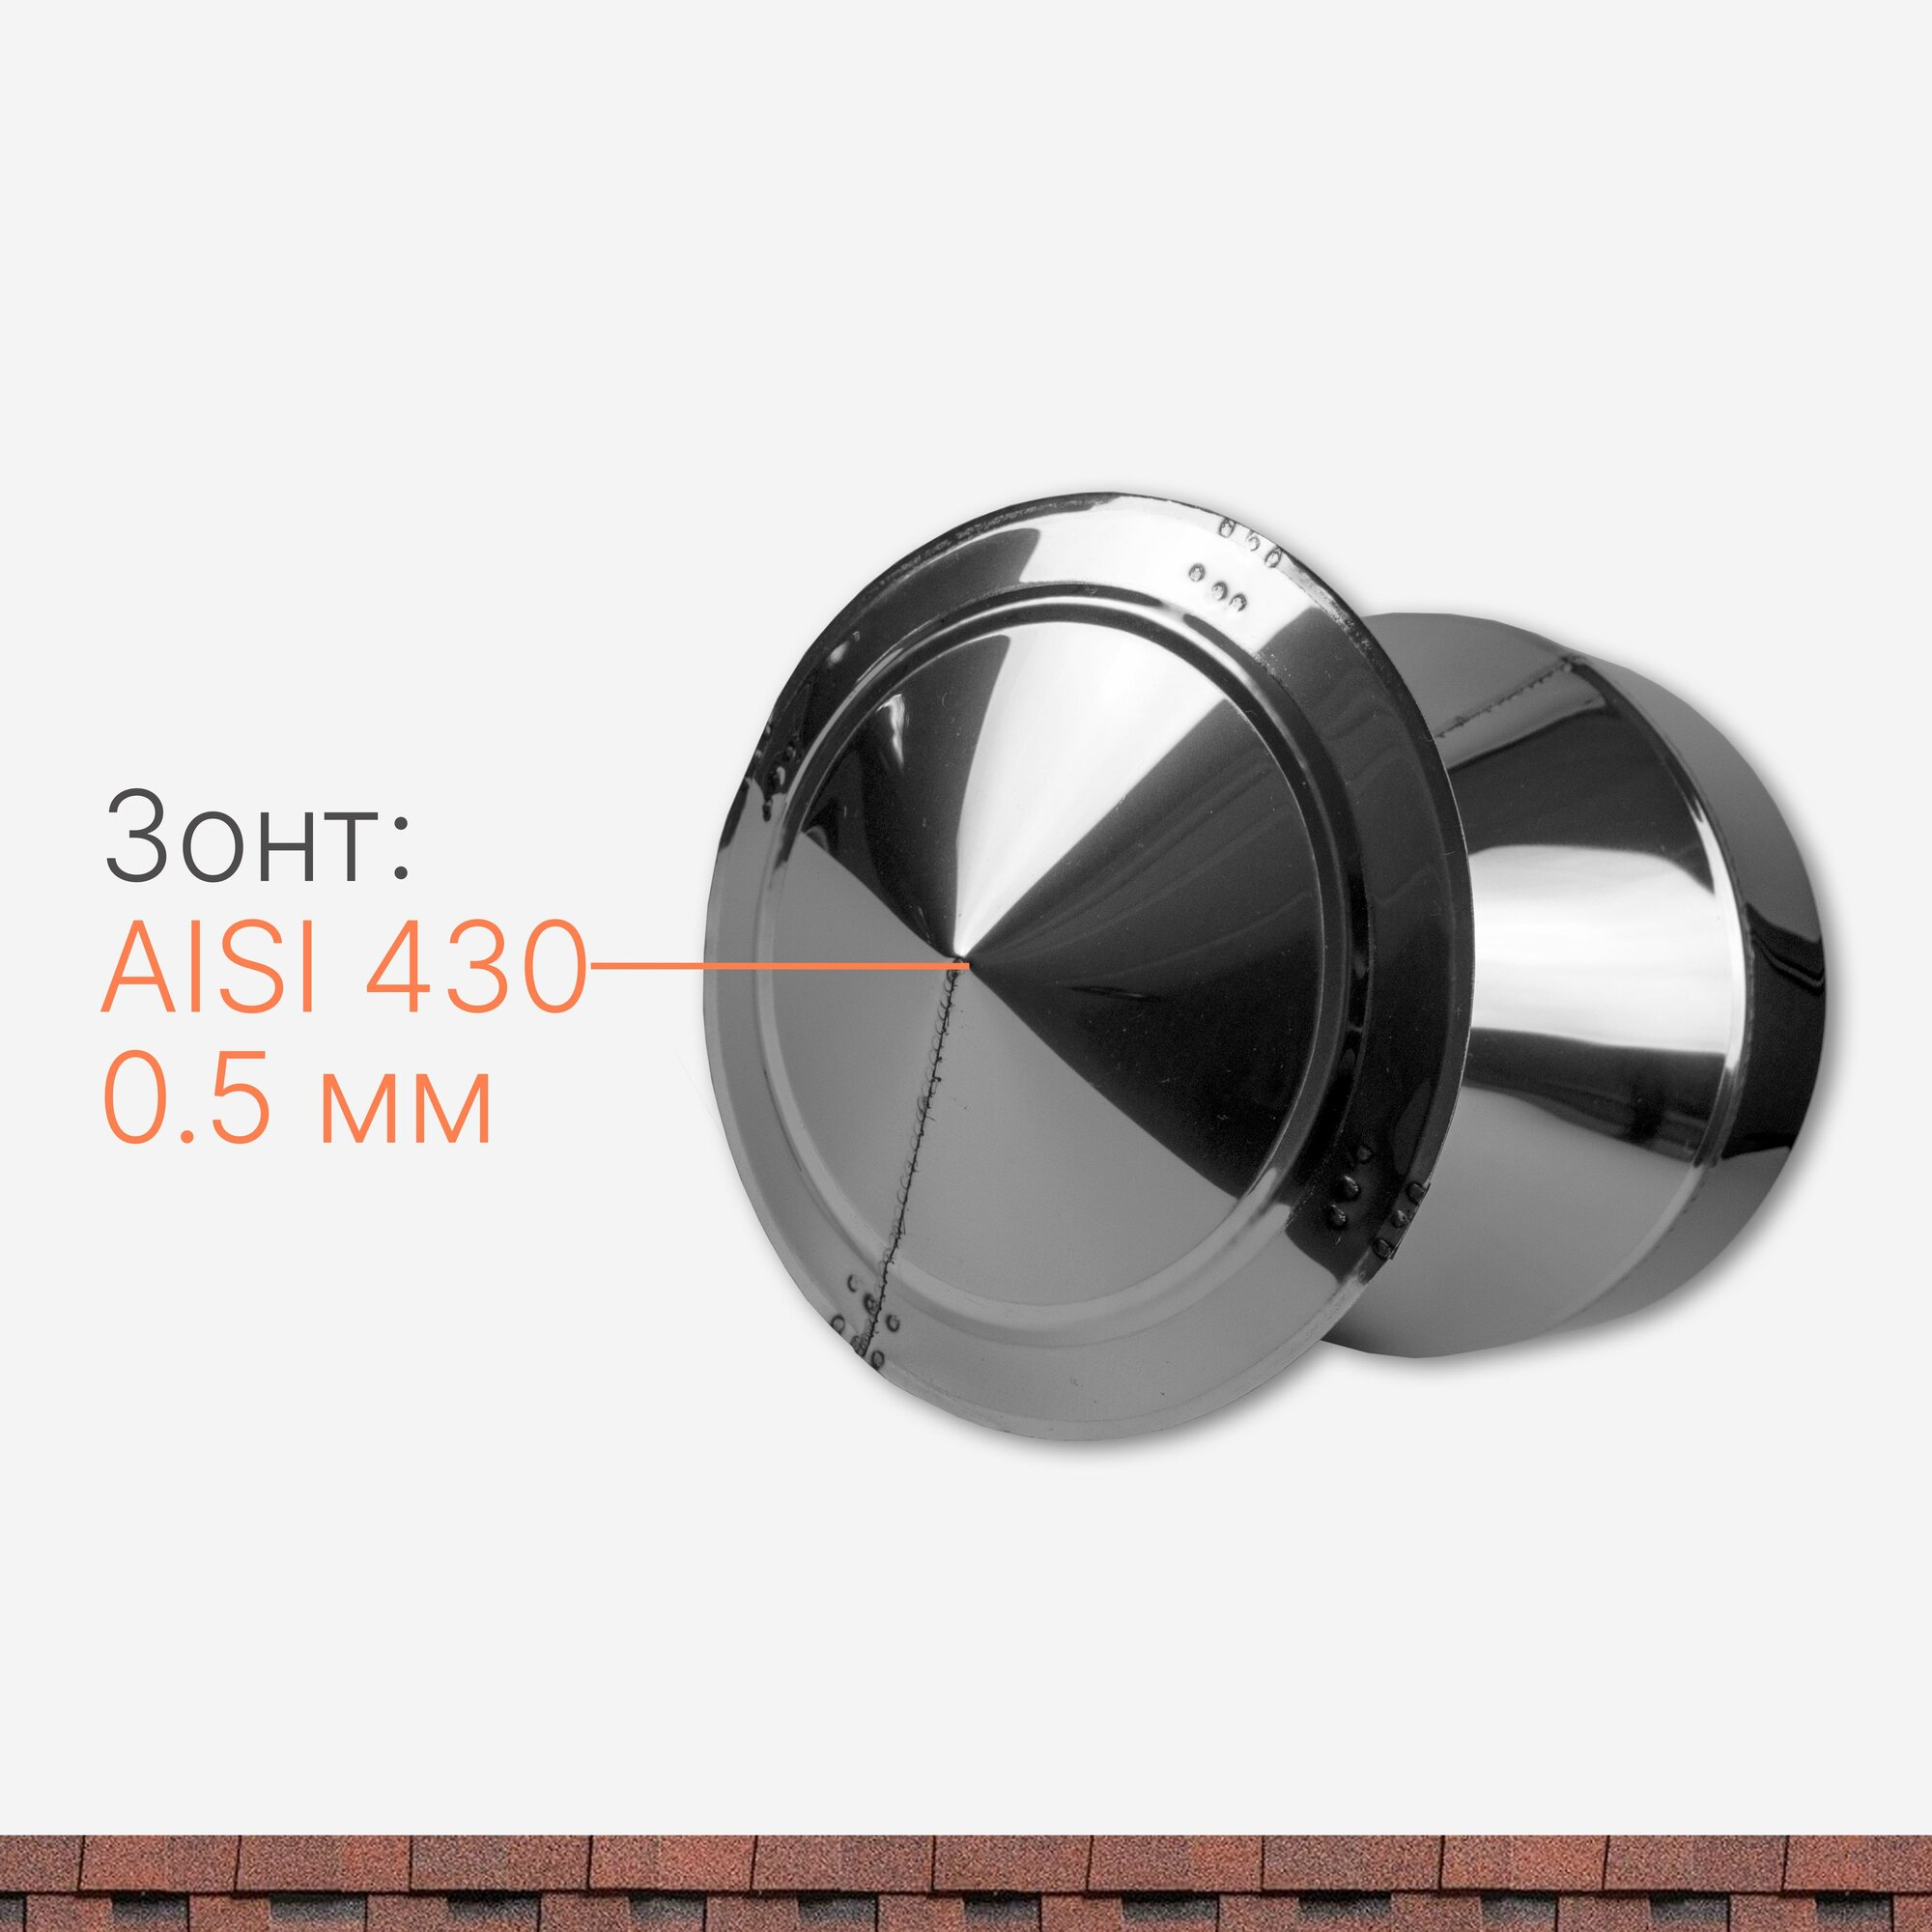 Оголовок для дымохода D 110/210 мм из нержавеющий стали AISI 430 толщиной 0.5 мм